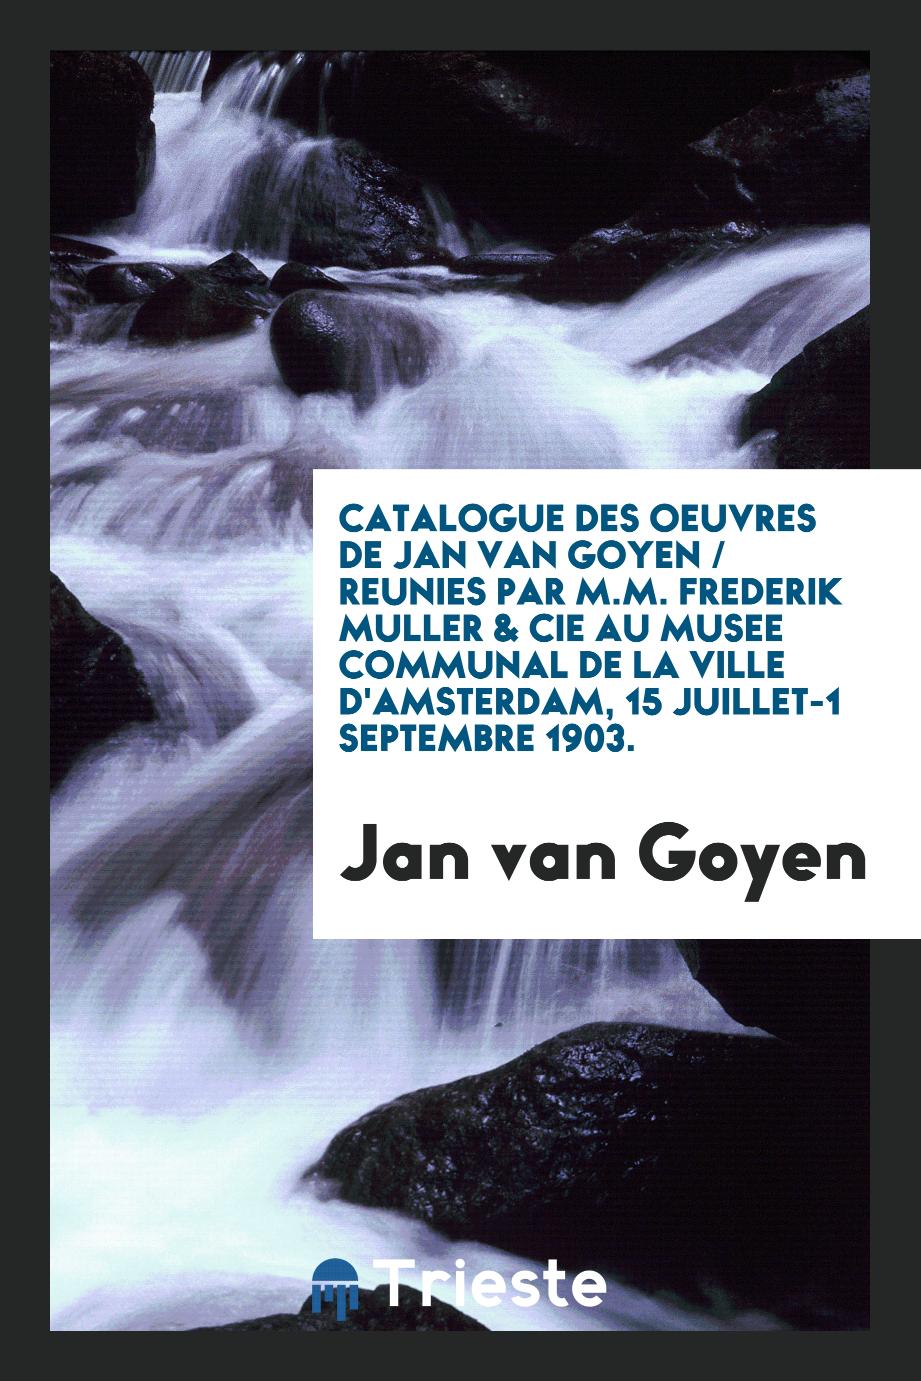 Catalogue des oeuvres de Jan van Goyen / reunies par M.M. Frederik Muller & Cie au Musee Communal de la ville d'Amsterdam, 15 juillet-1 septembre 1903.